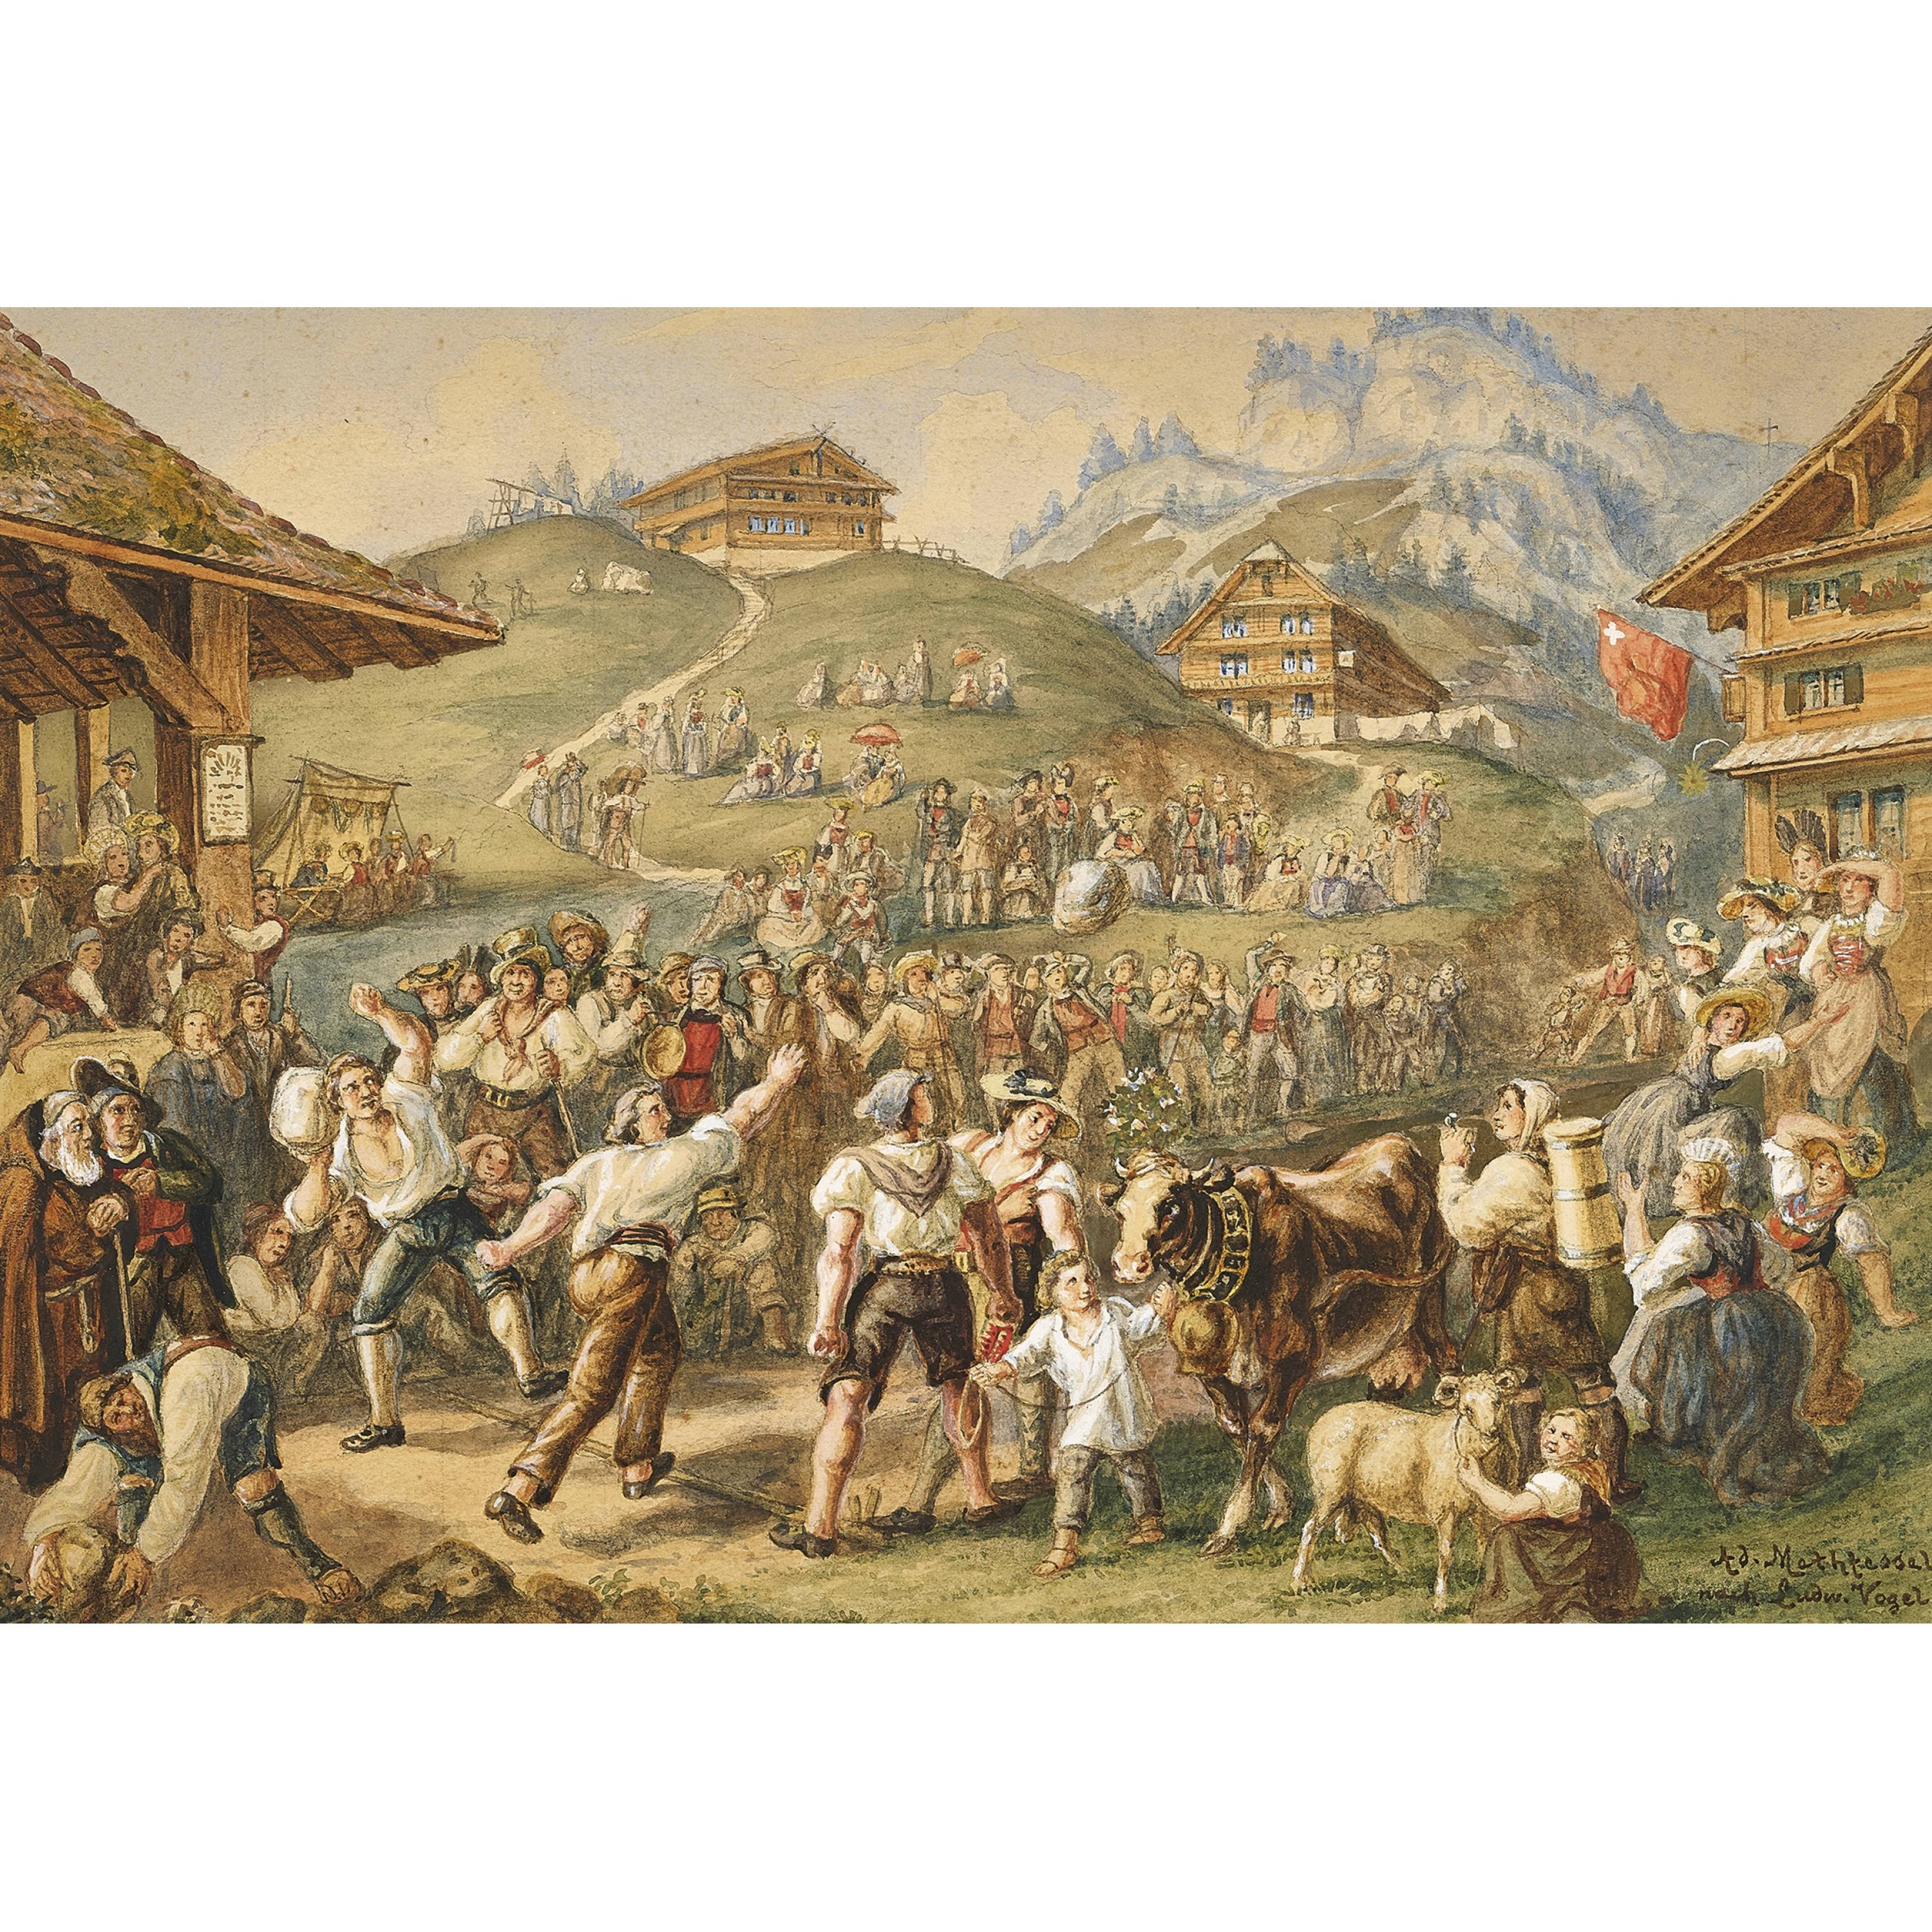 "Steinstosserfest am Rigi Cant. Schwyz" by Adolfo Methfessel, Georg Ludwig Vogel